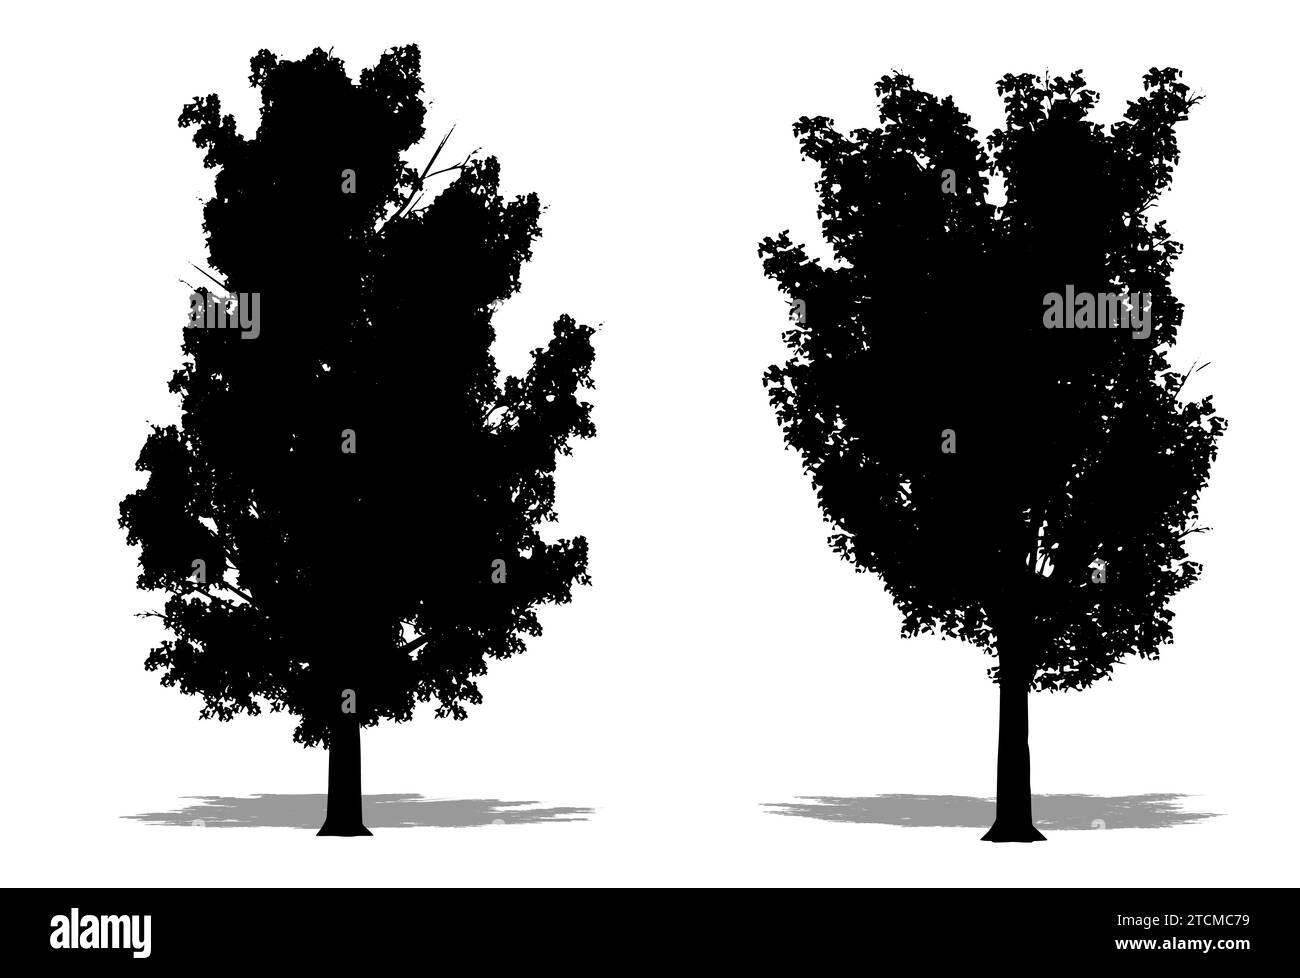 Set oder Sammlung von Ulmen-Stachelbäumen als schwarze Silhouette auf weißem Hintergrund. Konzept- oder konzeptionelle 3D-Illustration für Natur, Planet, Ökologie und Stockfoto